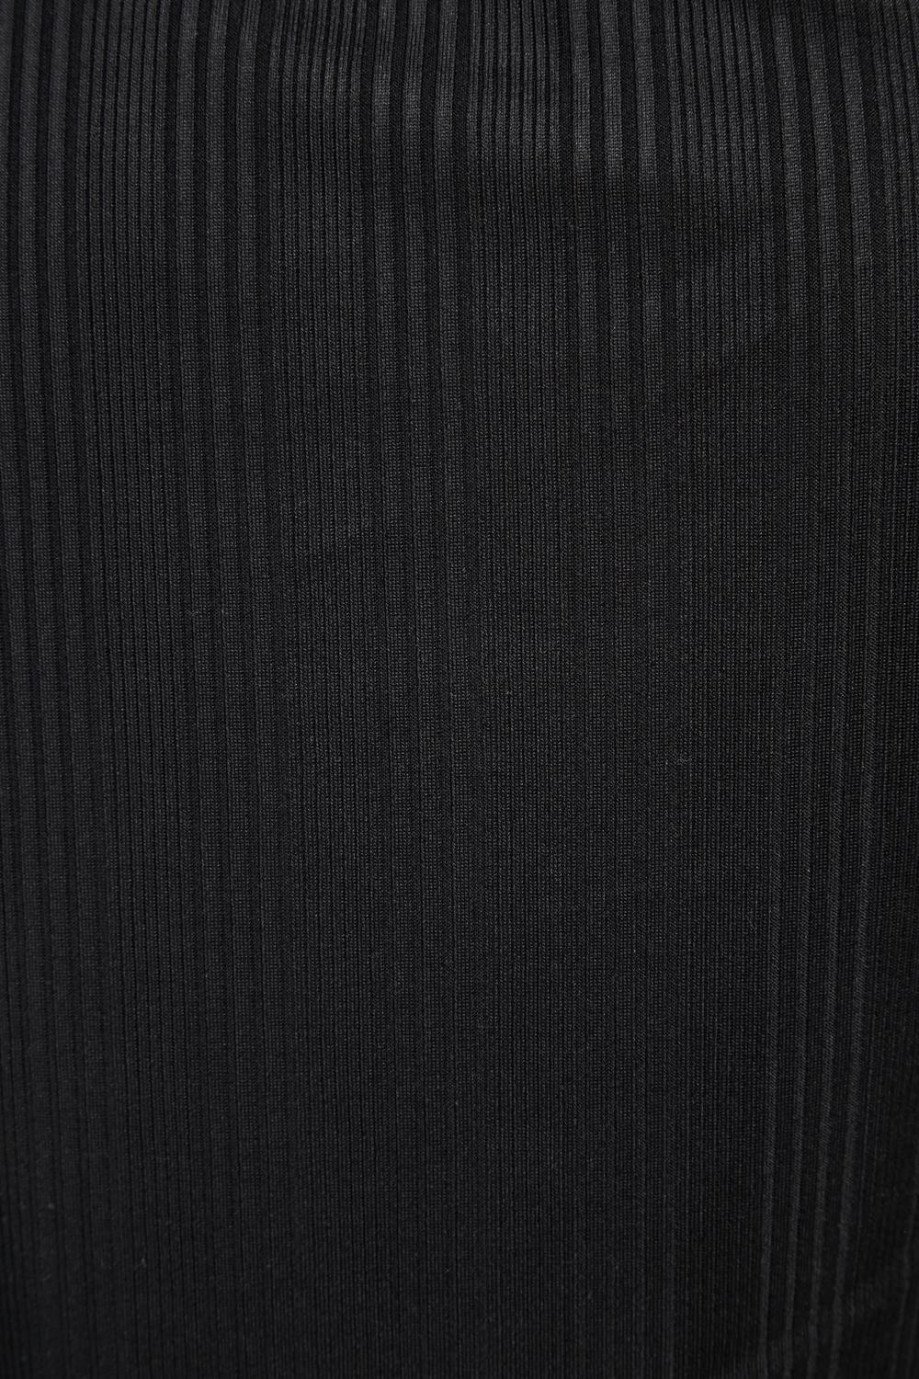 Camiseta negra con manga larga, escotes ovalados y texturas de canal